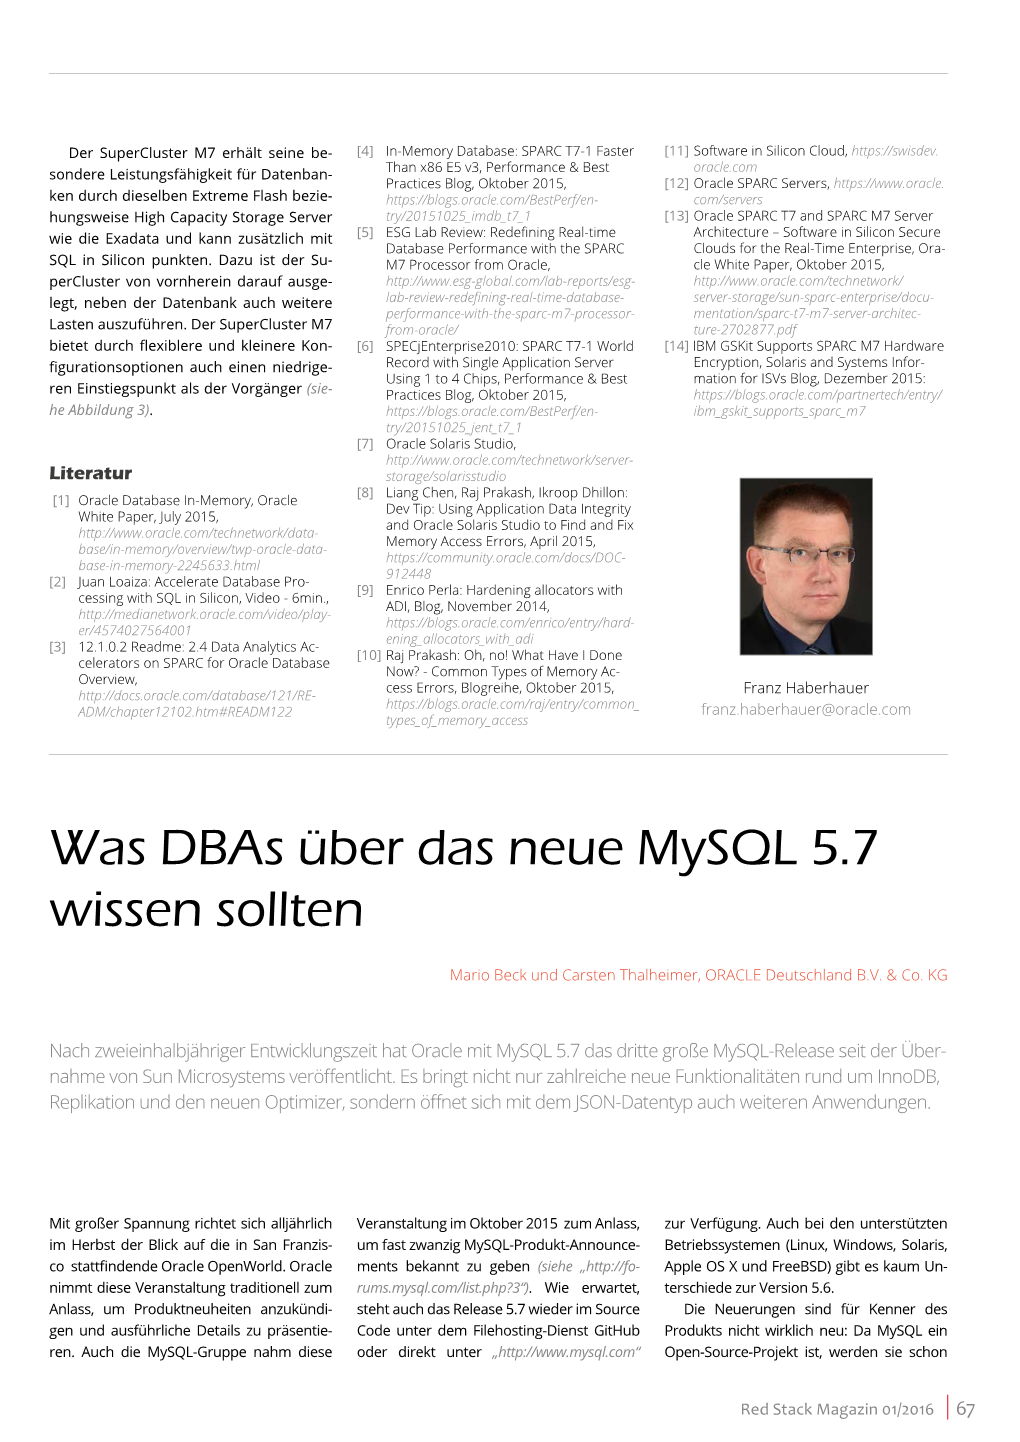 Was Dbas Über Das Neue Mysql 5.7 Wissen Sollten